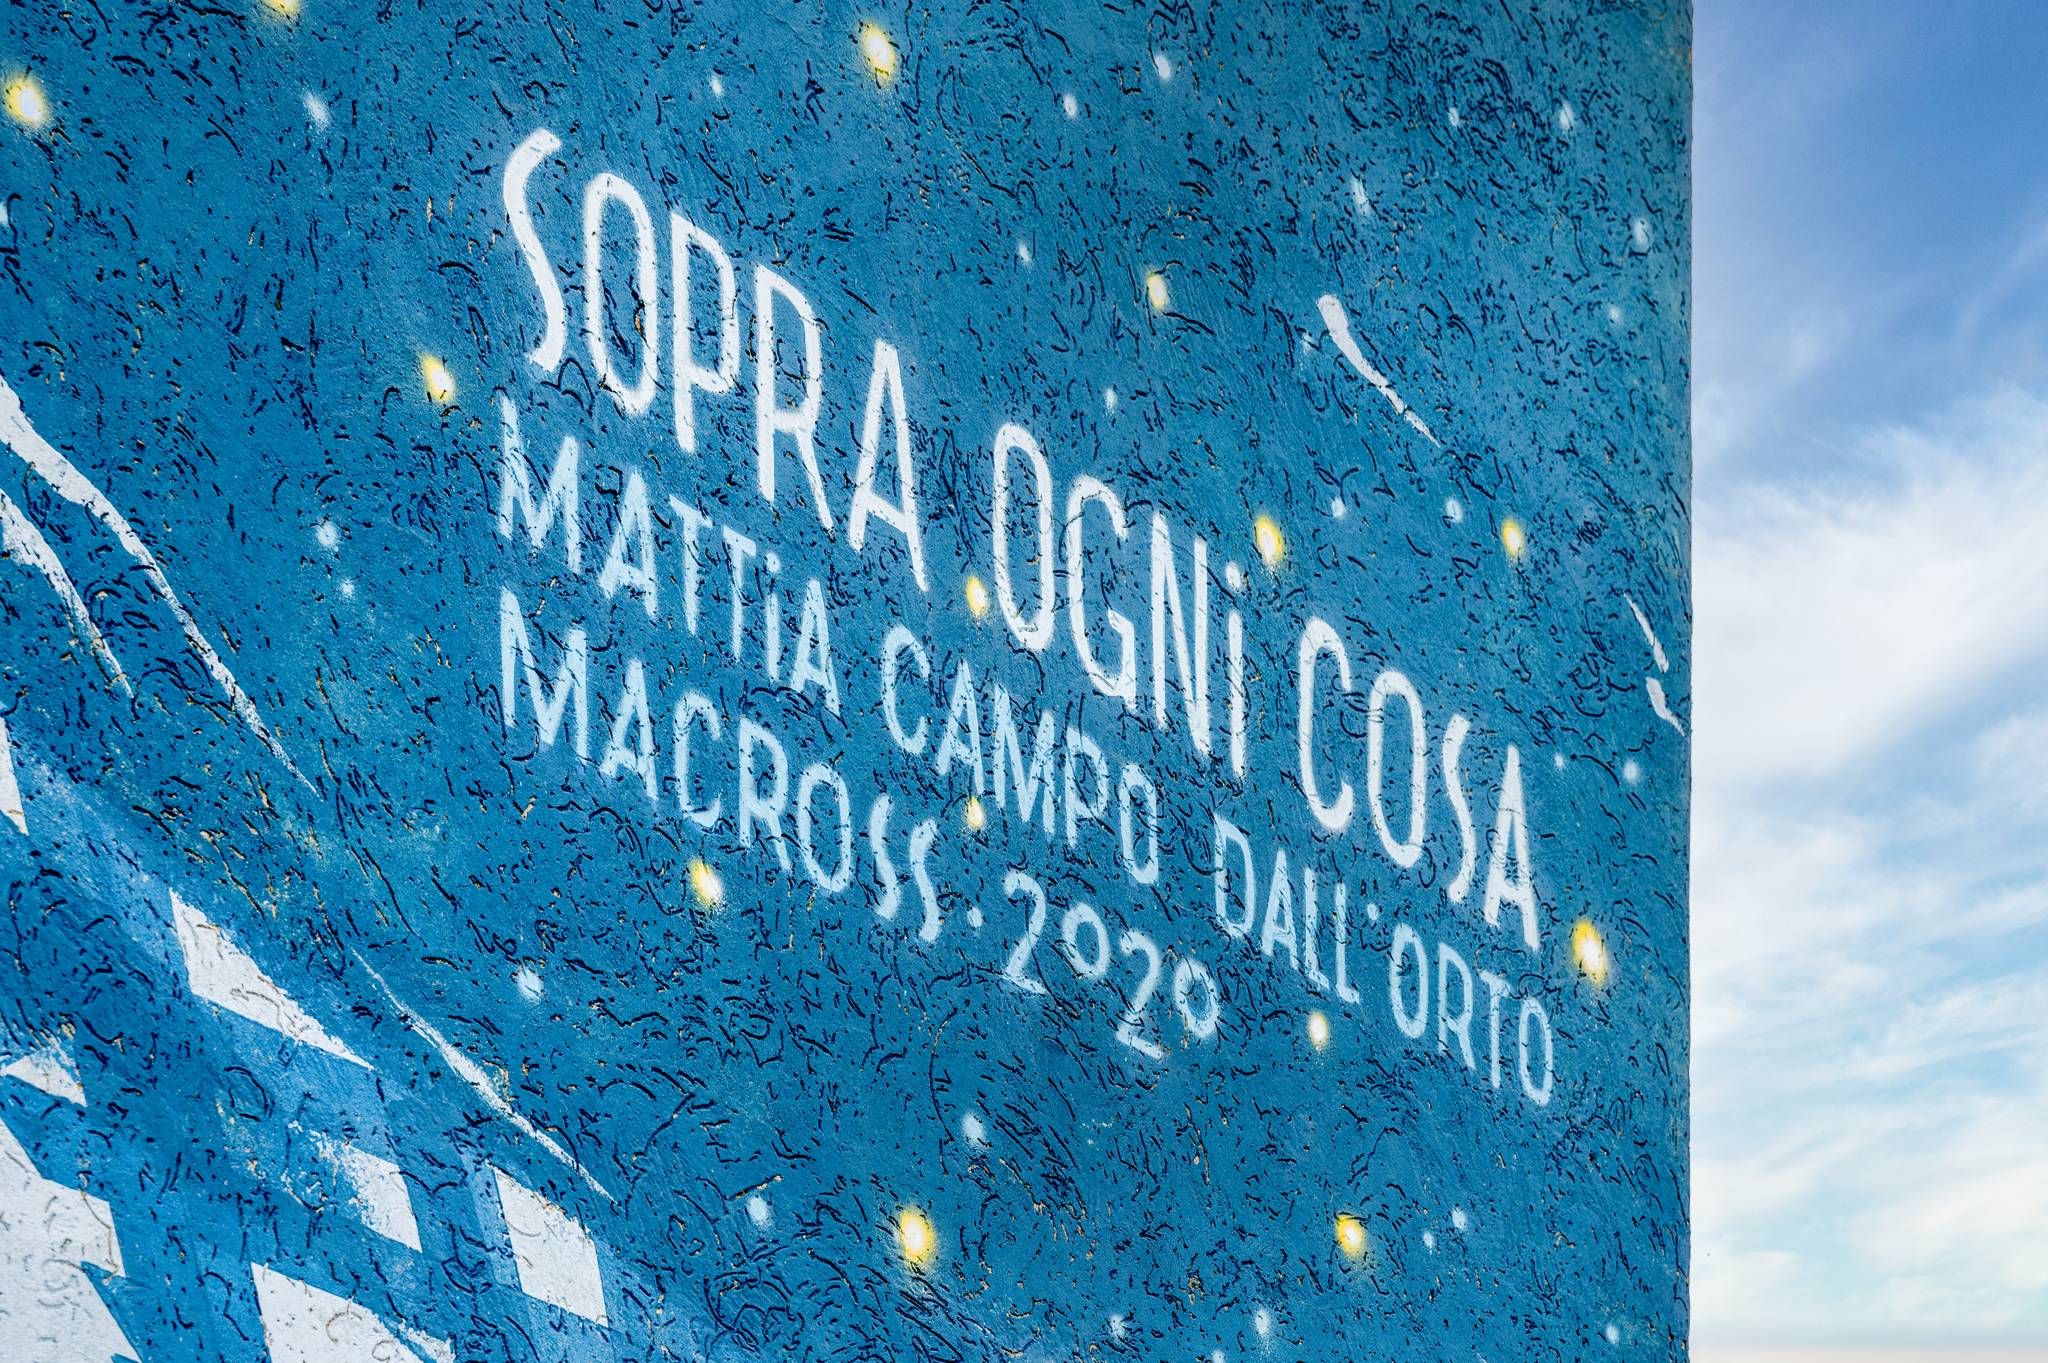 Mattia Campo Dall'Orto&mdash;Sopra ogni cosa